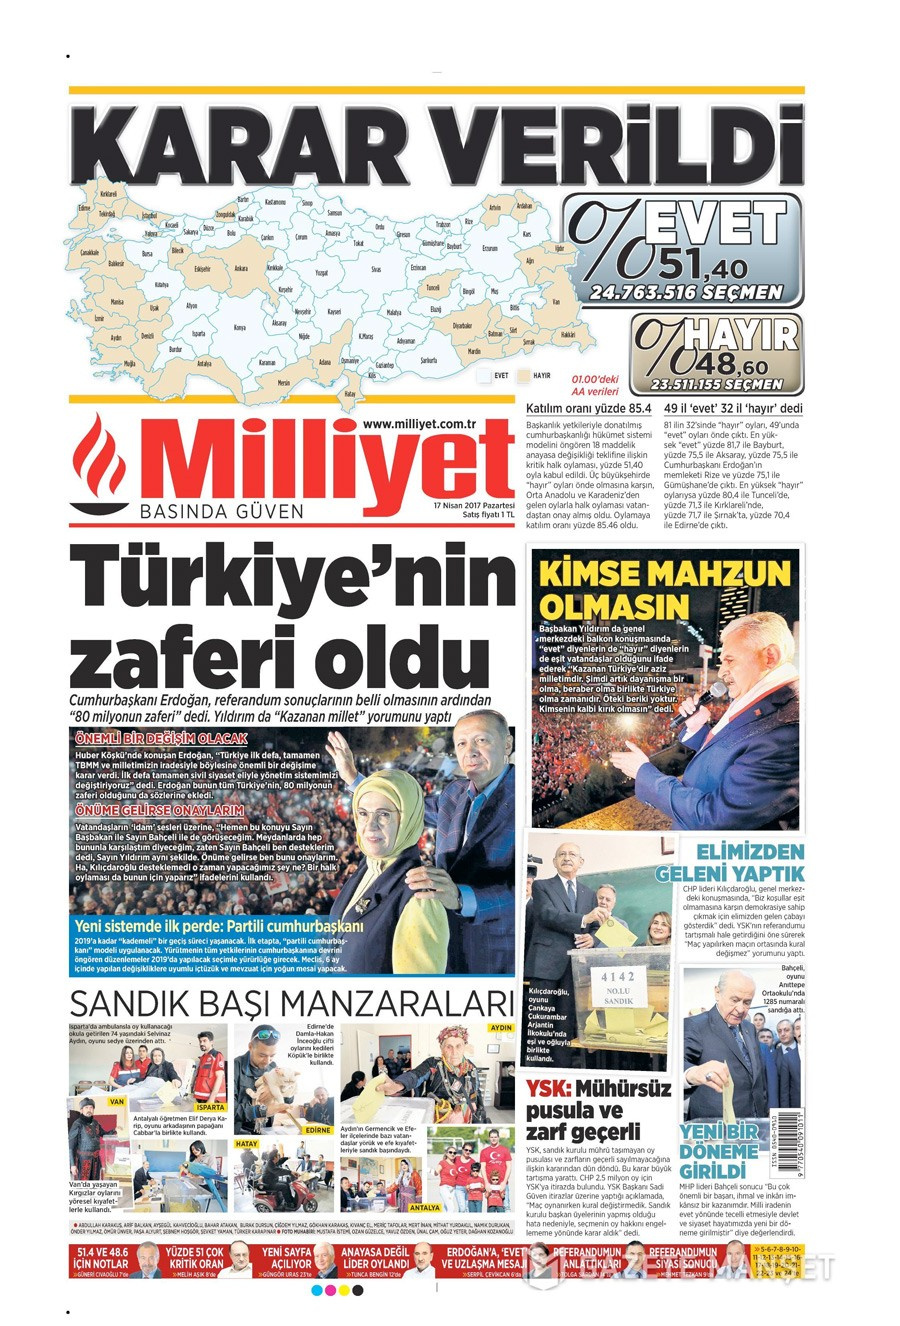 Gazete manşetleri 17 Nisan referandum için kim ne manşet attı!